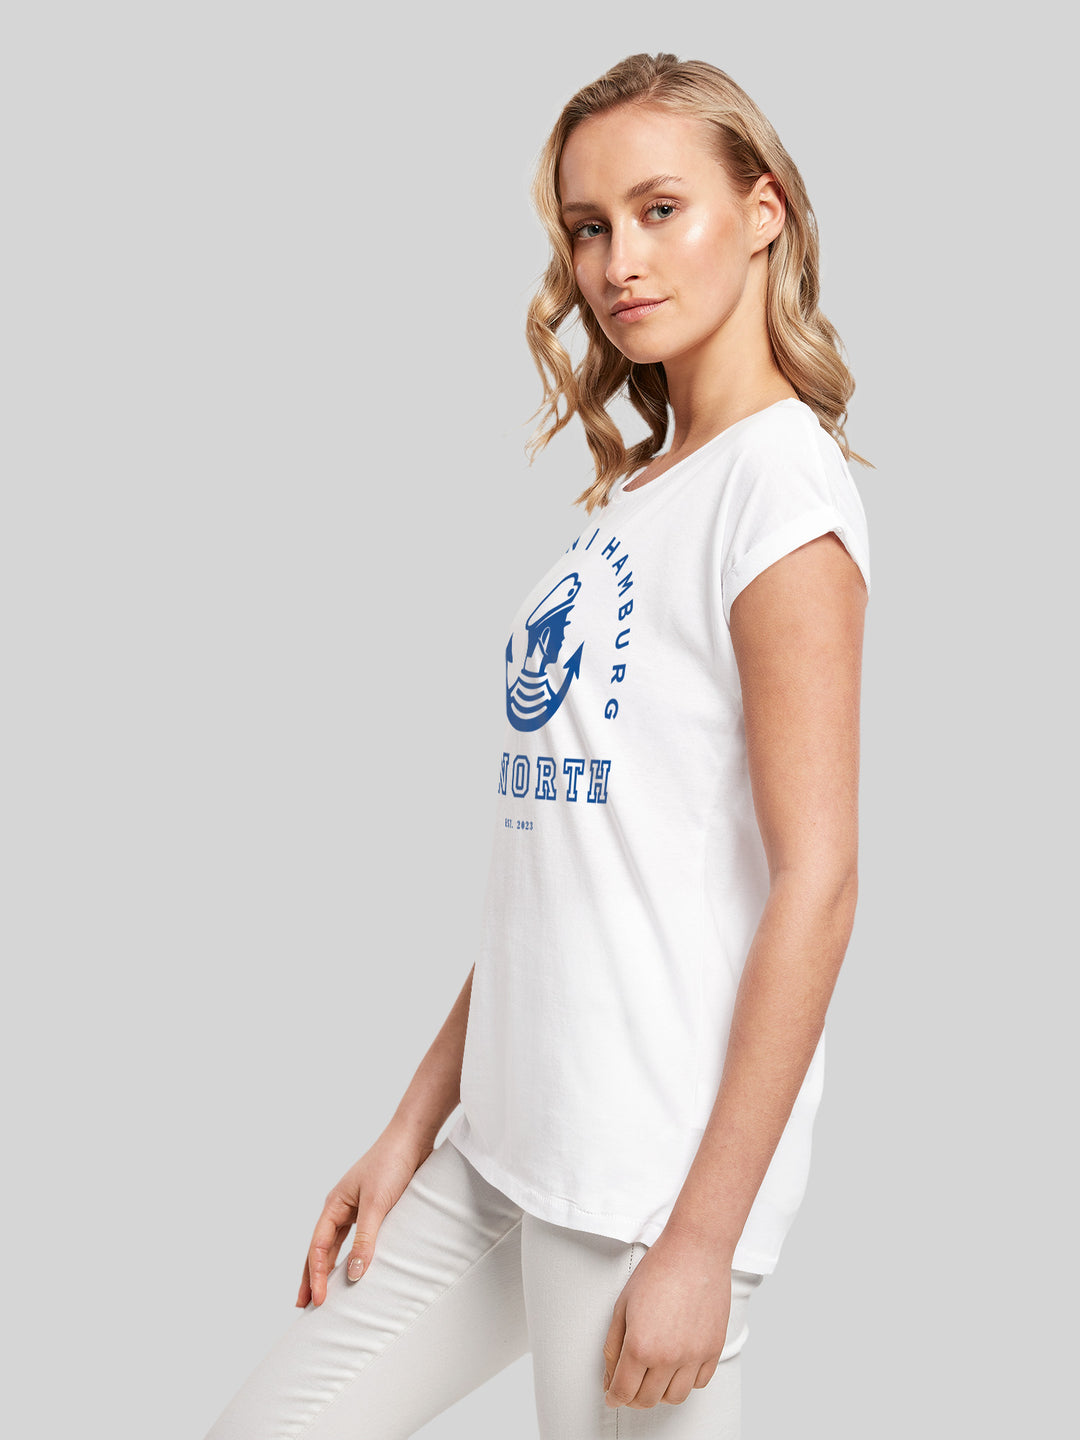 MALIN | T-Shirt Damen Go North Logo